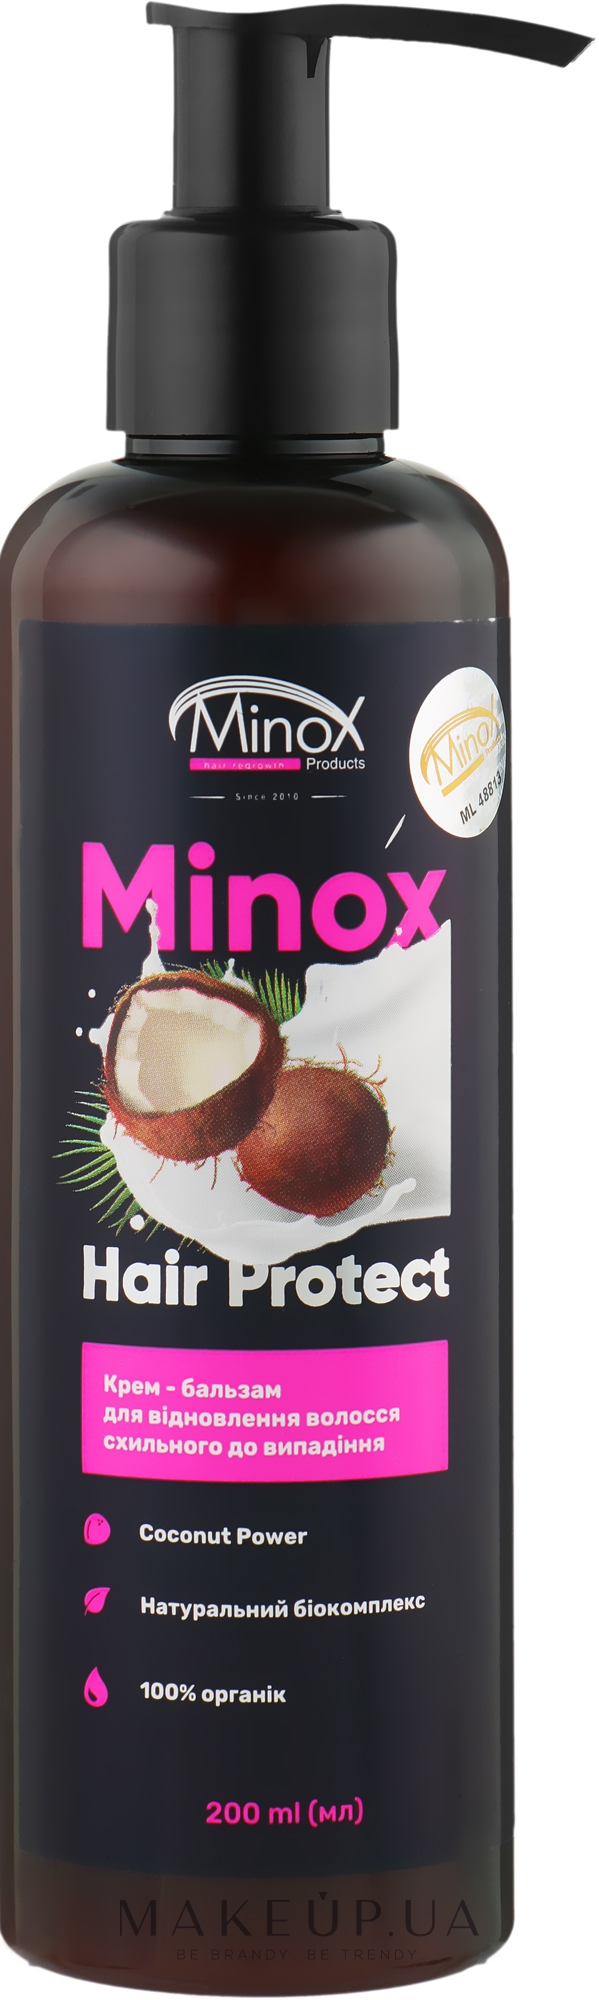 Крем-бальзам для восстановления волос - Minox Hair Protect — фото 200ml